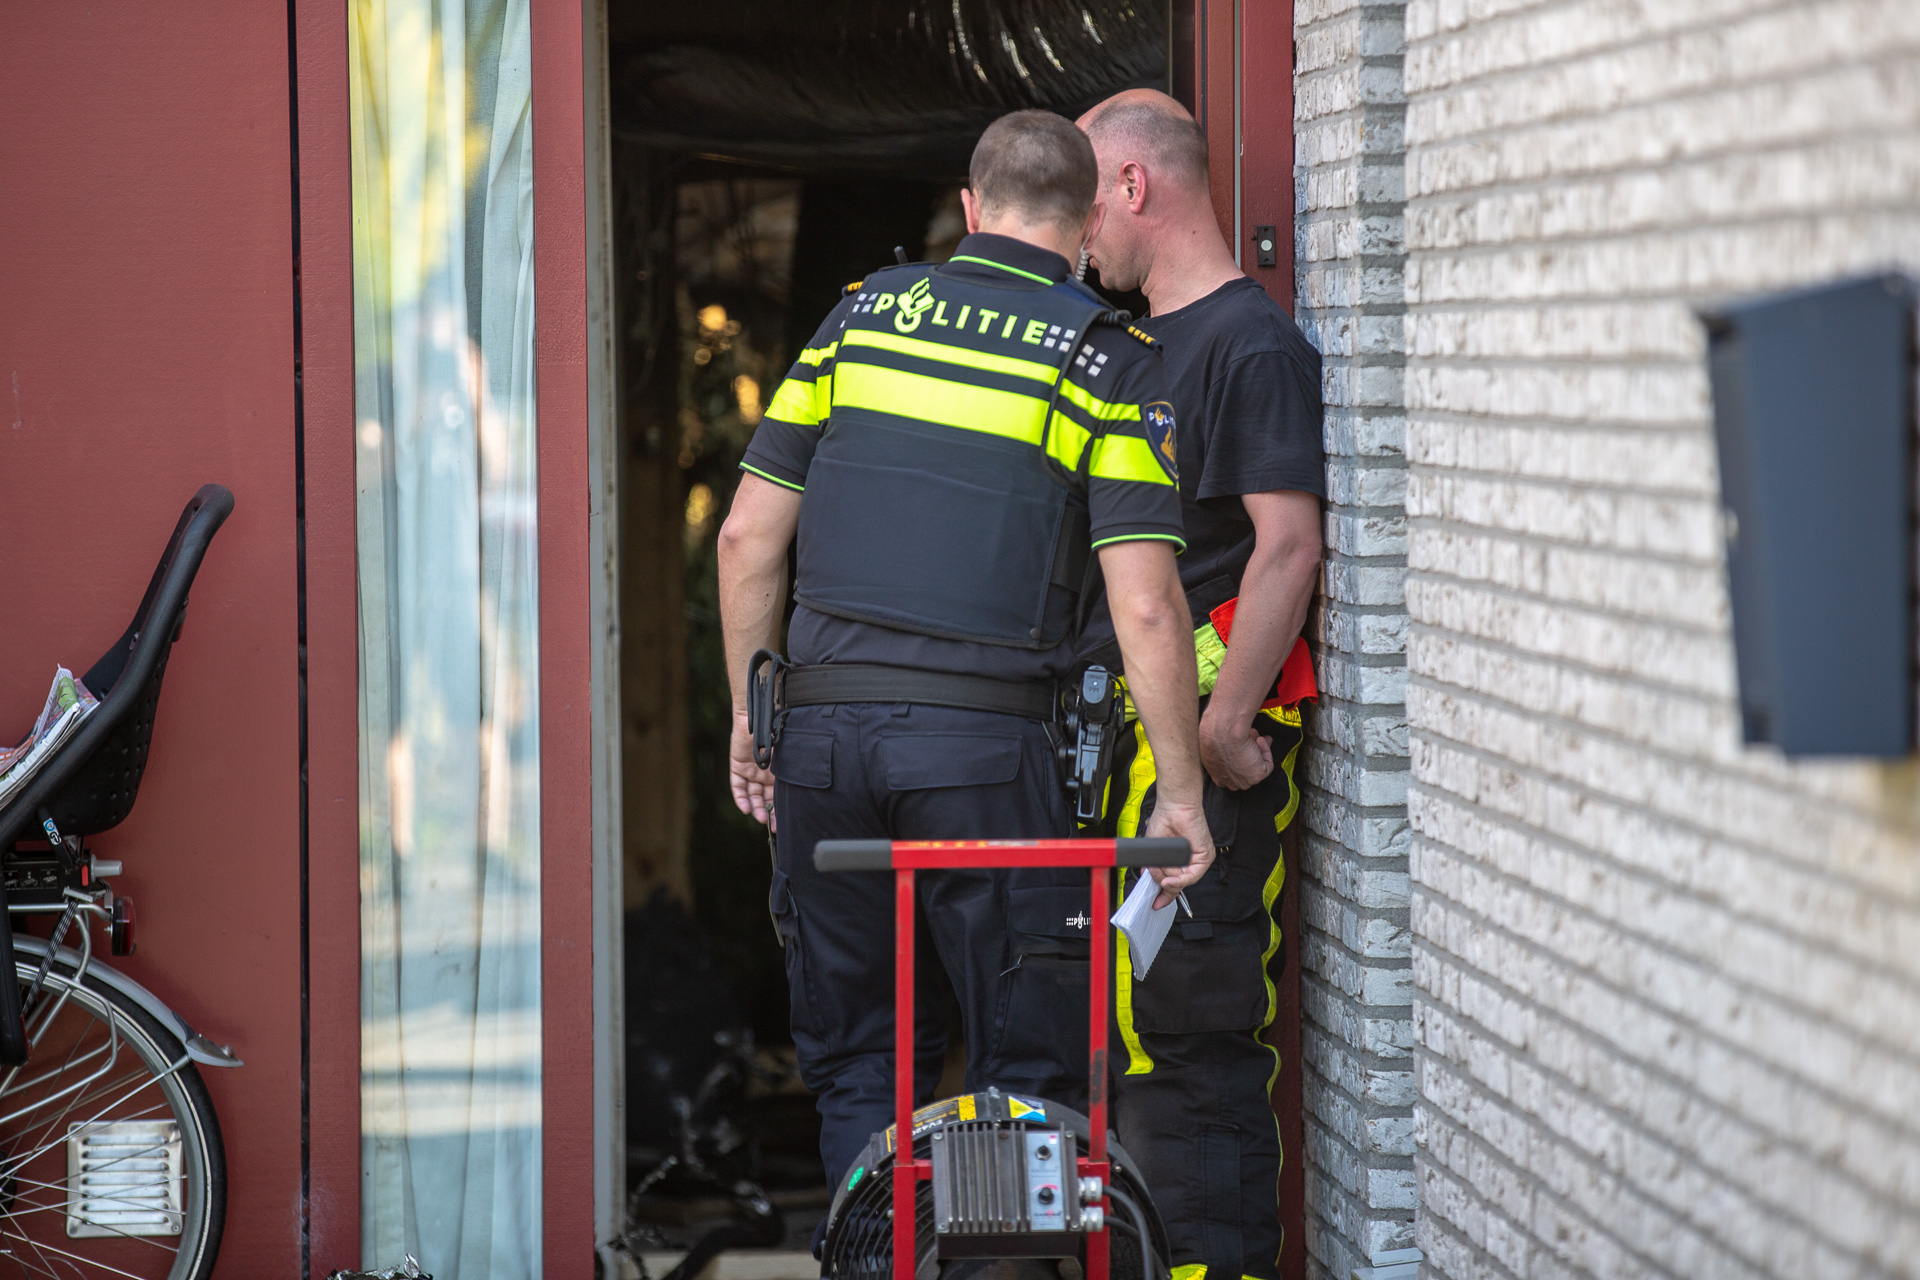  Hennepkwekerij ontdekt bij woningbrand in Roosendaal